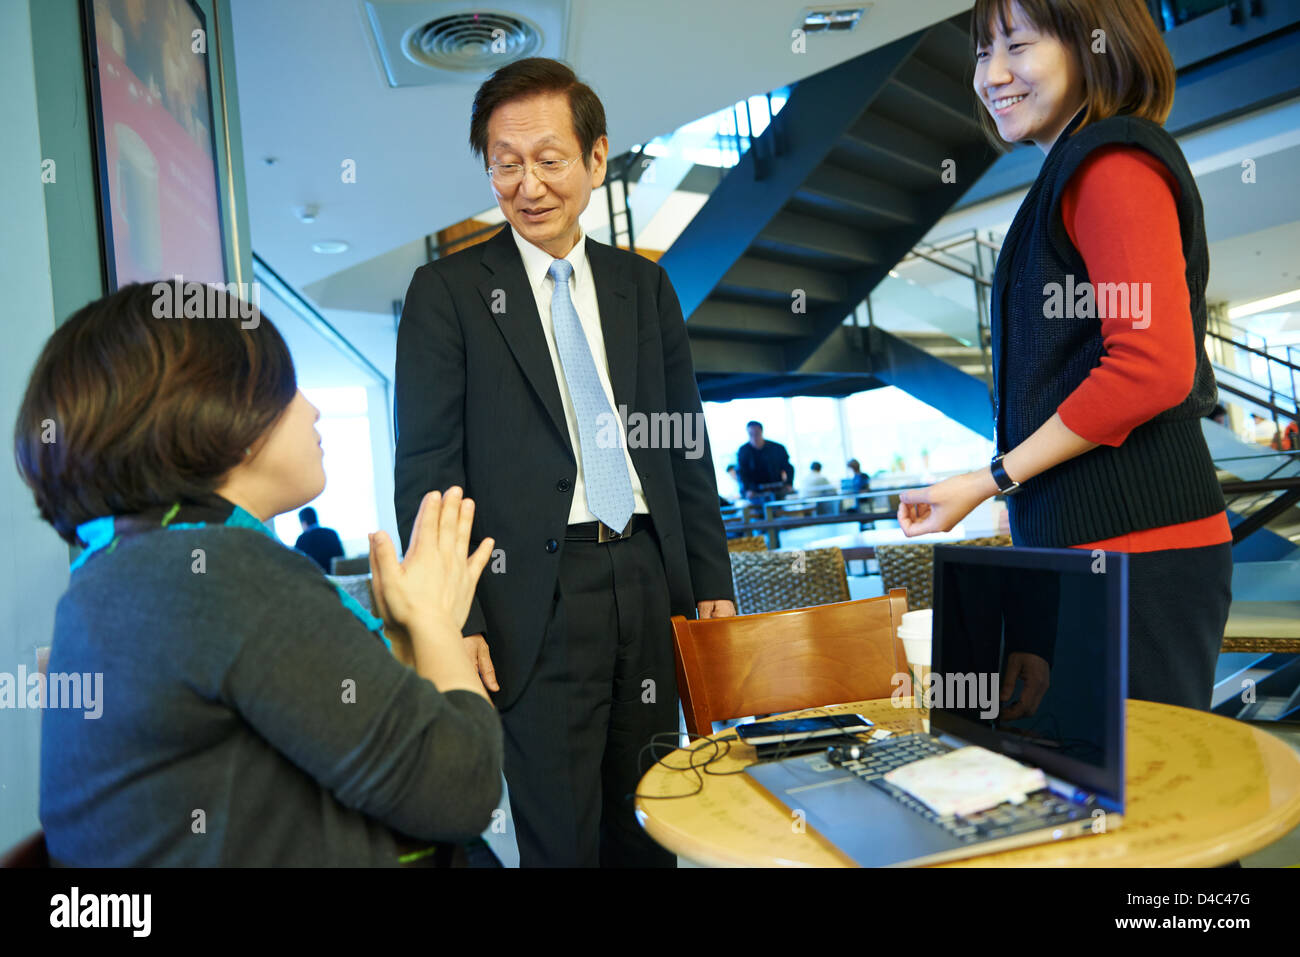 Jonney Shih, Chairman von ASUS, interagiert mit Kollegen bei Starbucks auf dem Campus von der ASUS-Hauptsitz in Taiwan. Stockfoto